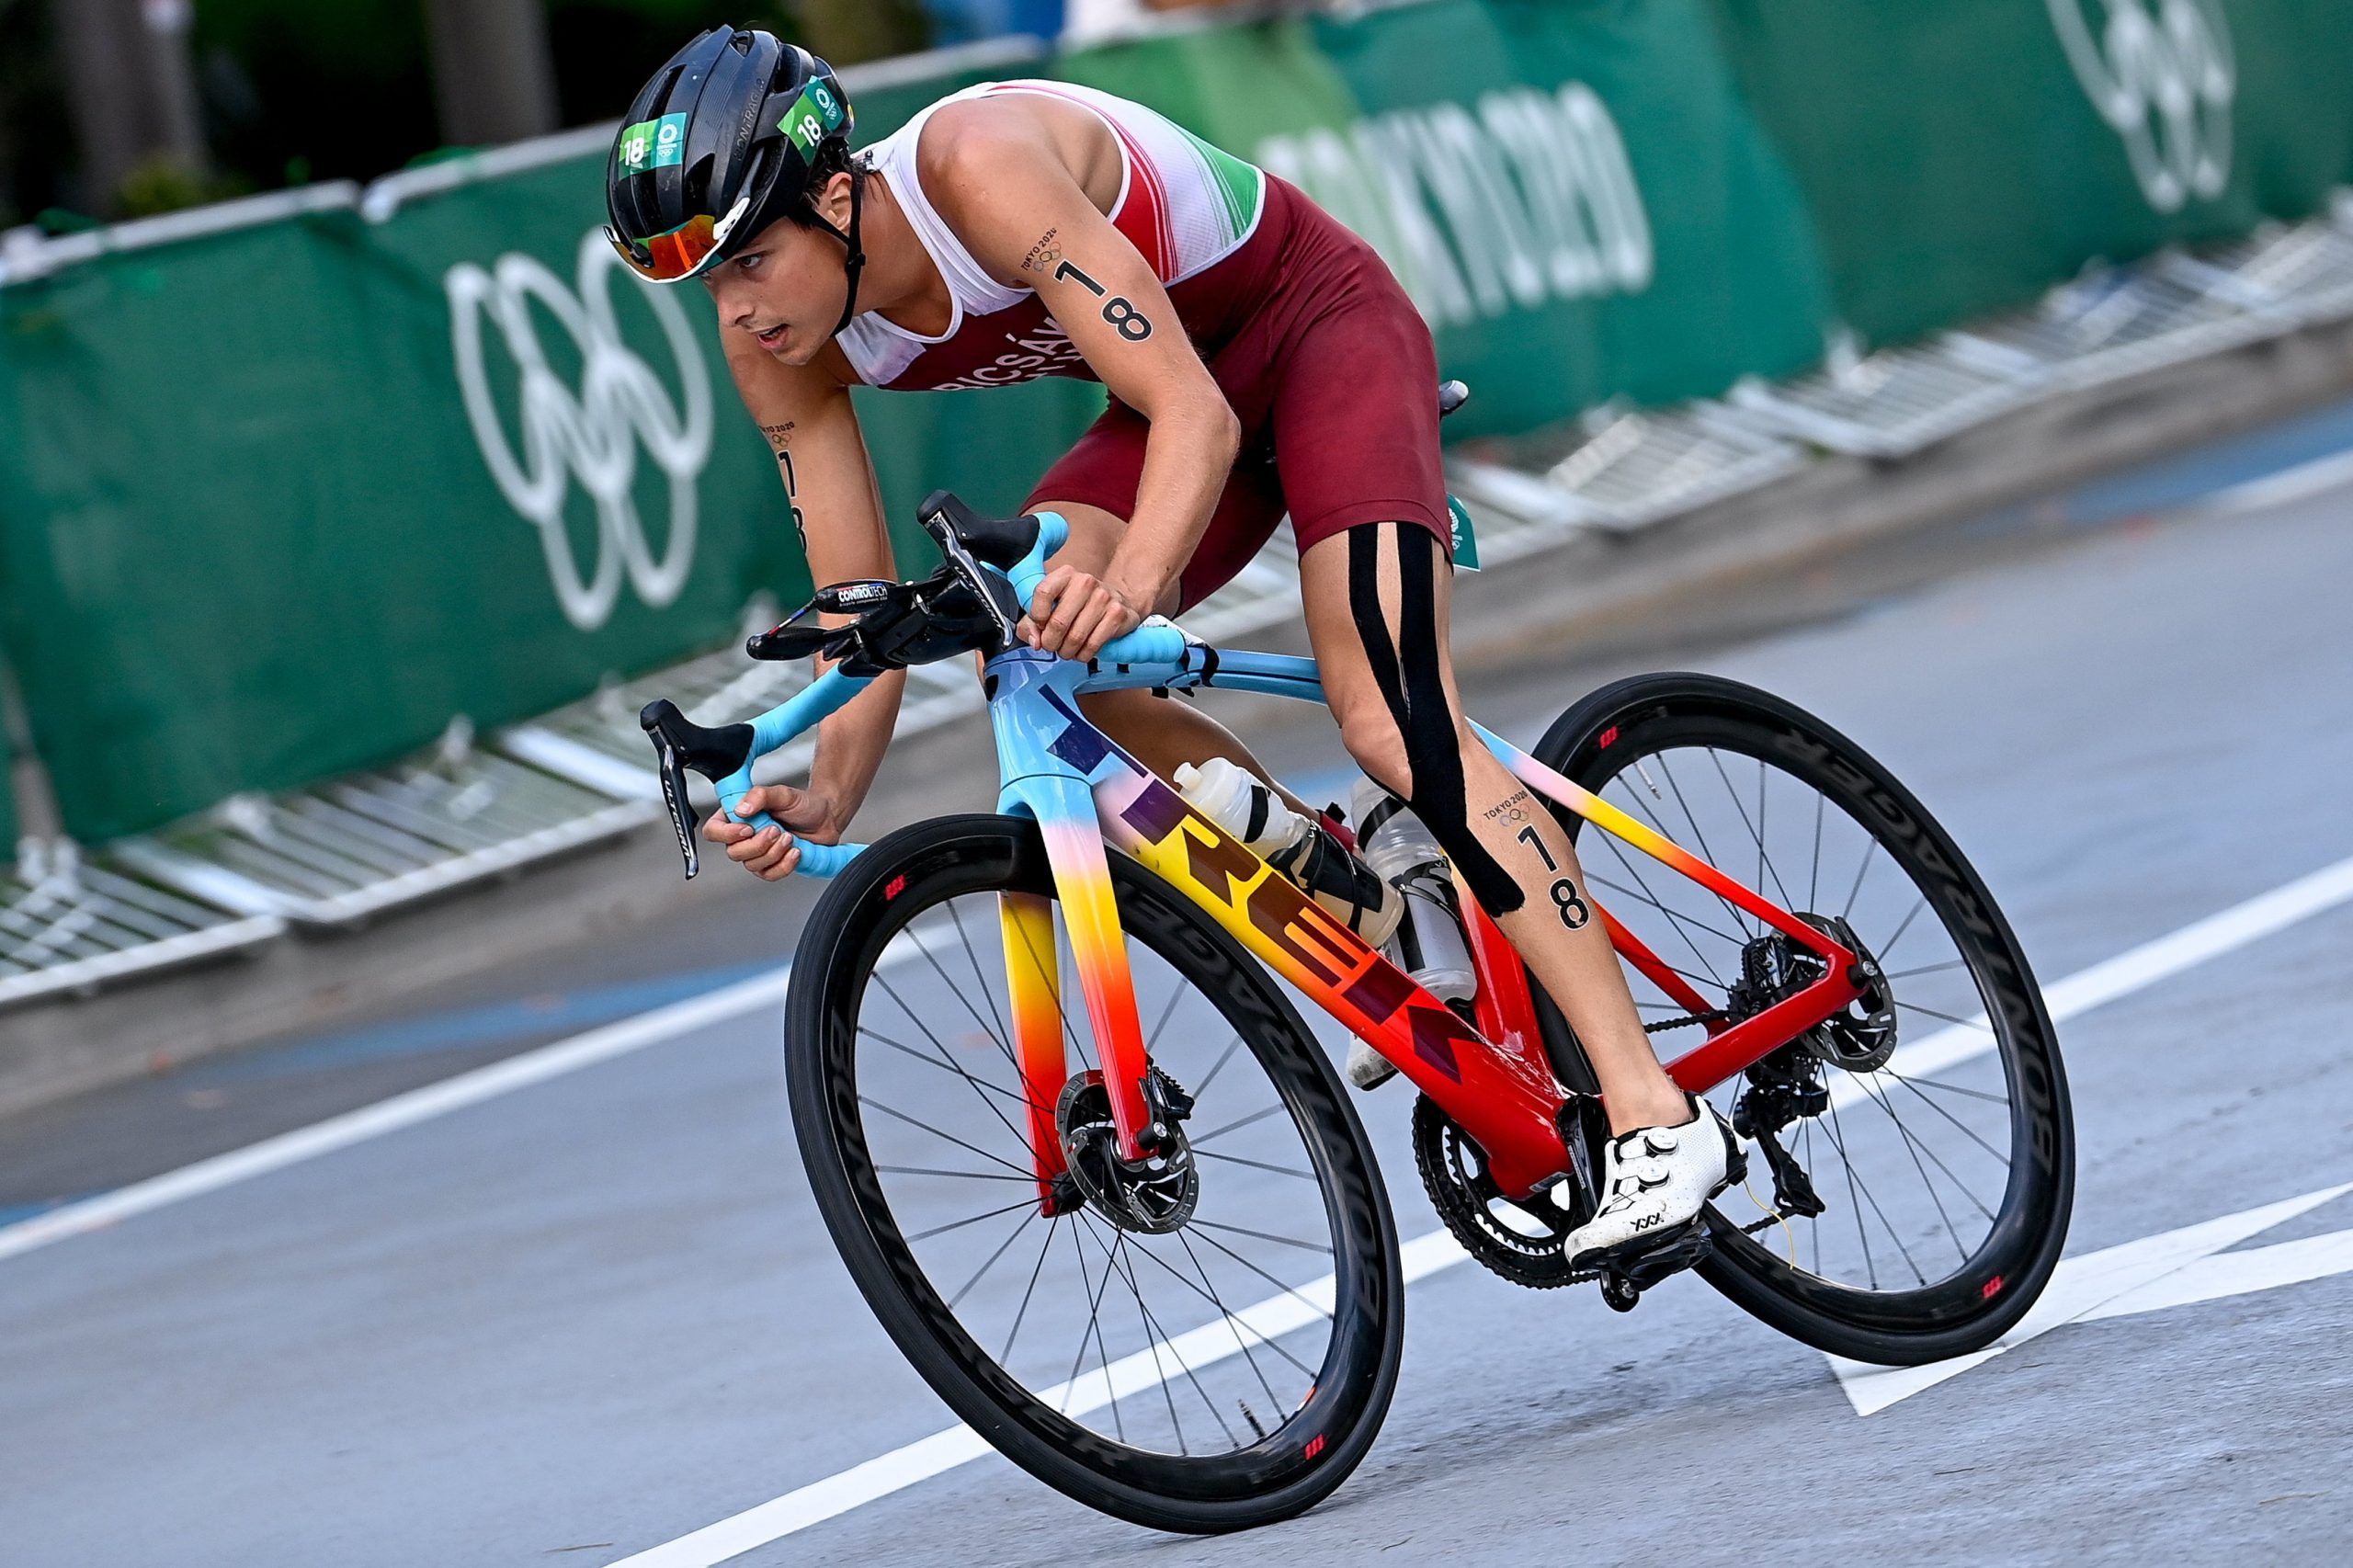 Bence Bicsák holt Ungarns beste Leistung im Triathlon bei Olympischen Spielen